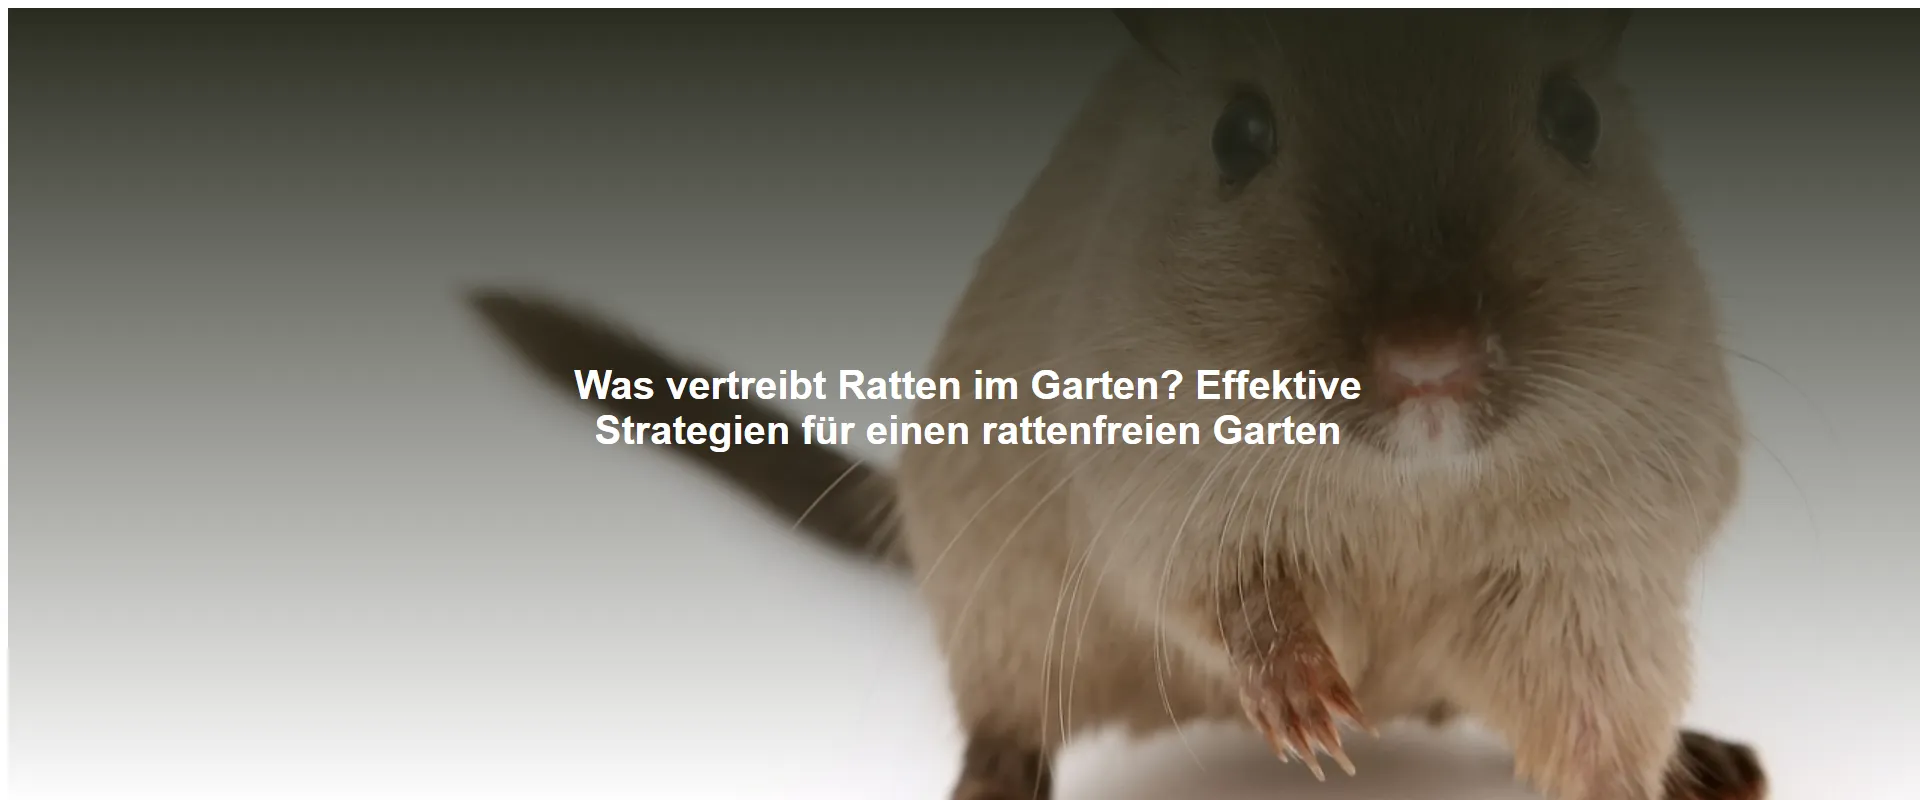 Was vertreibt Ratten im Garten? Effektive Strategien für einen rattenfreien Garten